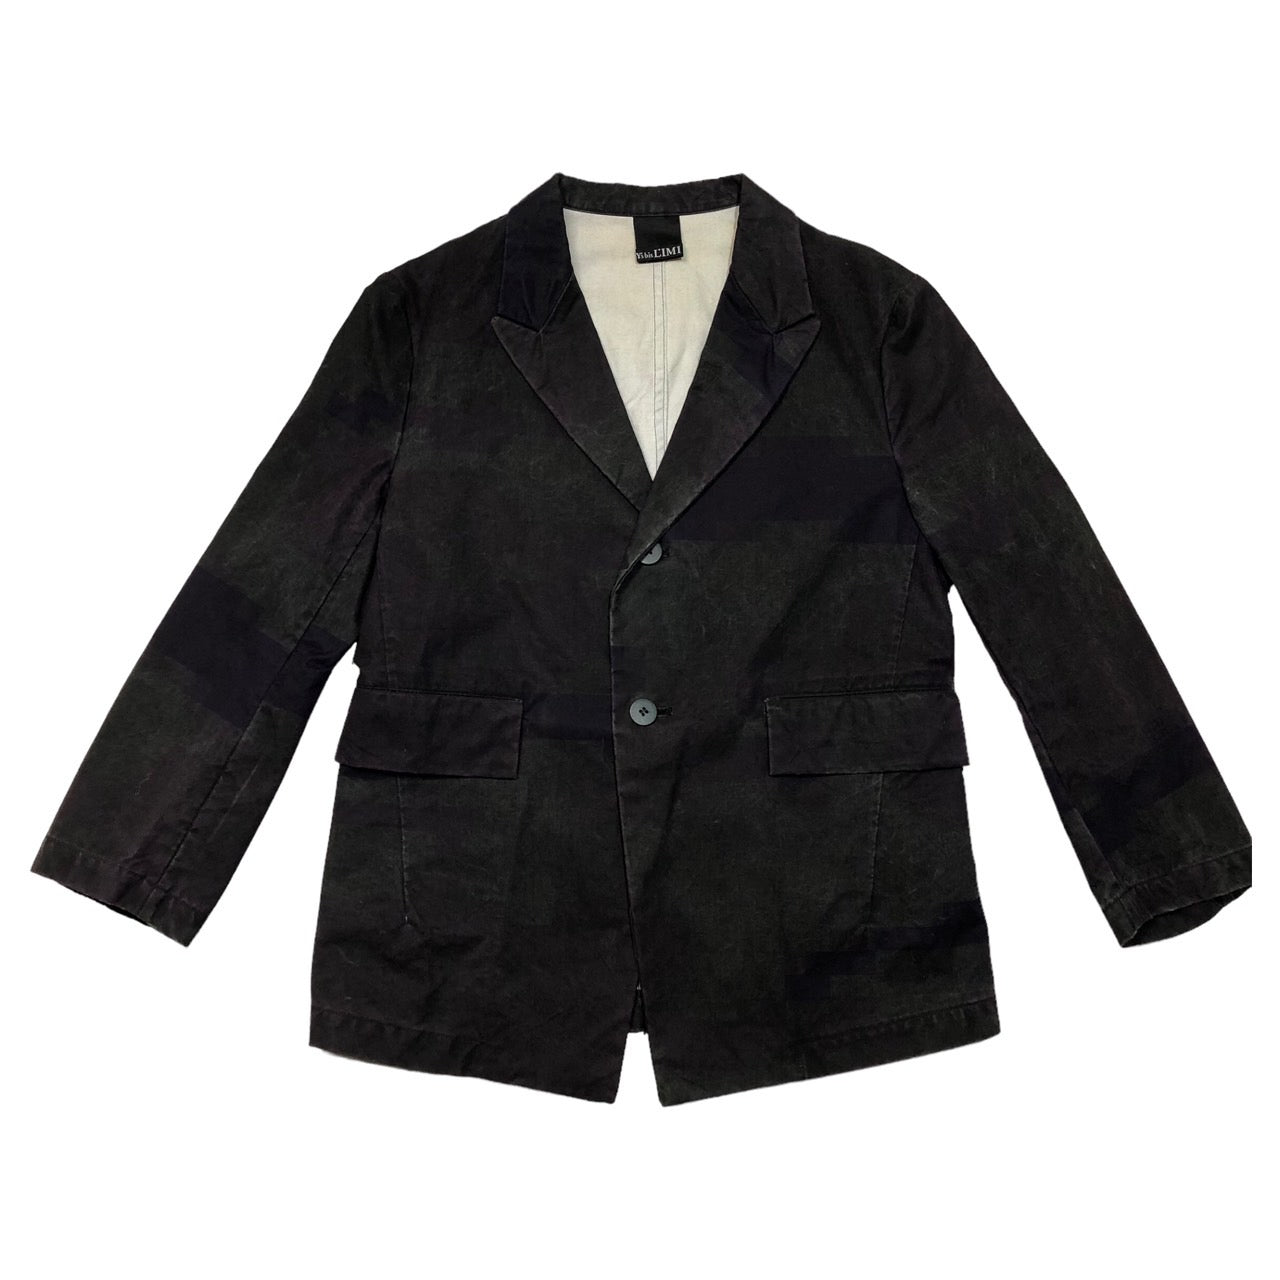 Y's bis LIMI(ワイズビスリミ) 02SS  graphic cotton jacket/グラフィックコットンジャケット/テーラードジャケット BE-J01-022 表記なし(FREE) ブラック×パープル LIMI feu前身ブランド